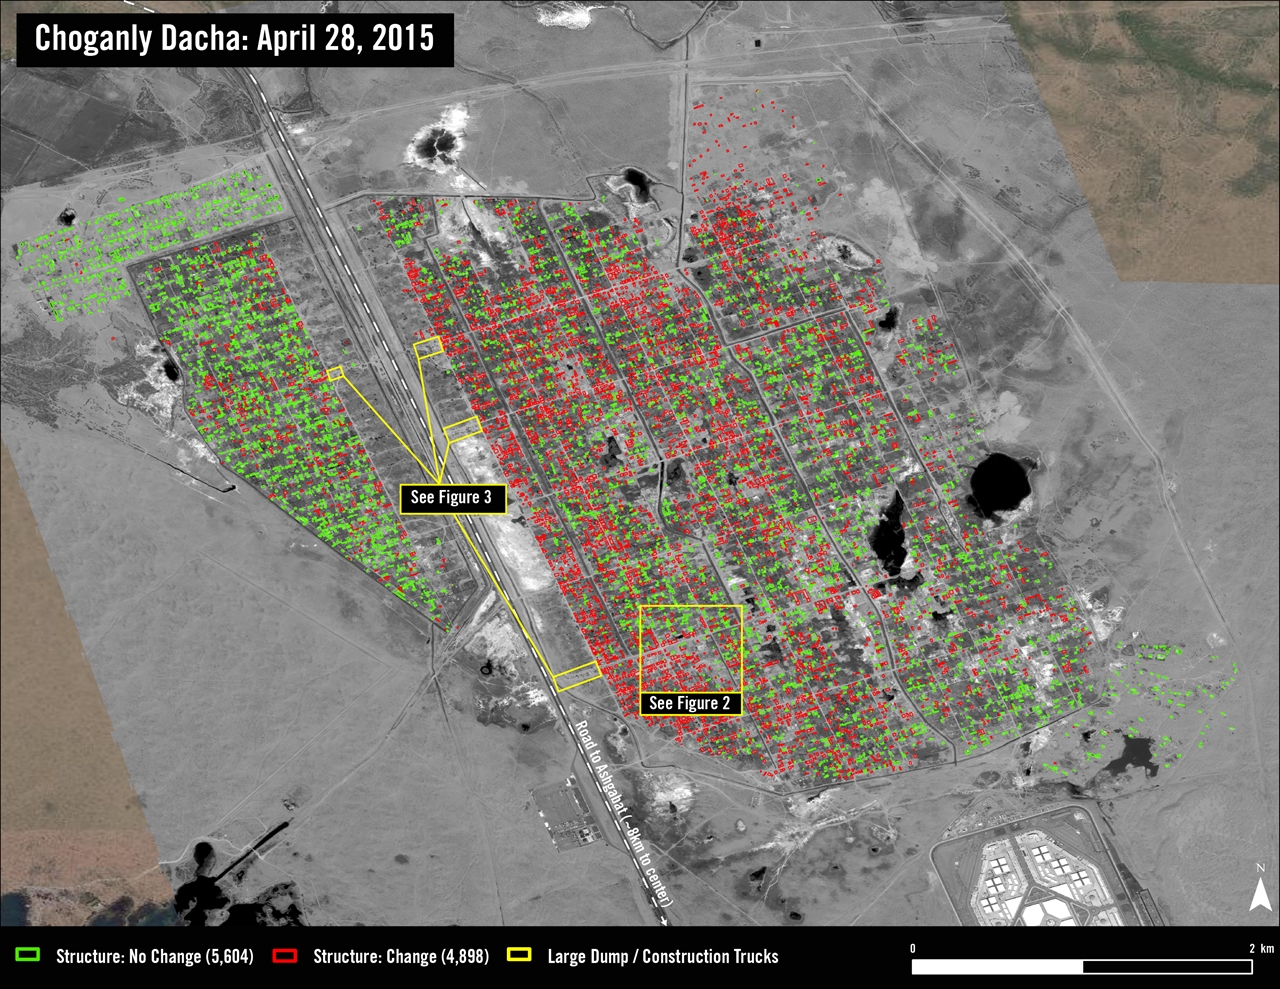 2015년 4월 28일 수도 아슈가바트 외곽의 초간리(Choganly) 지역을 촬영한 위성사진. 지난 2014년 3월 14일 사진과 비교해 변화가 감지되지 않은 곳은 초록색, 건물이 사라지는 등 변화를 보인 곳은 빨간색으로 표시했다 